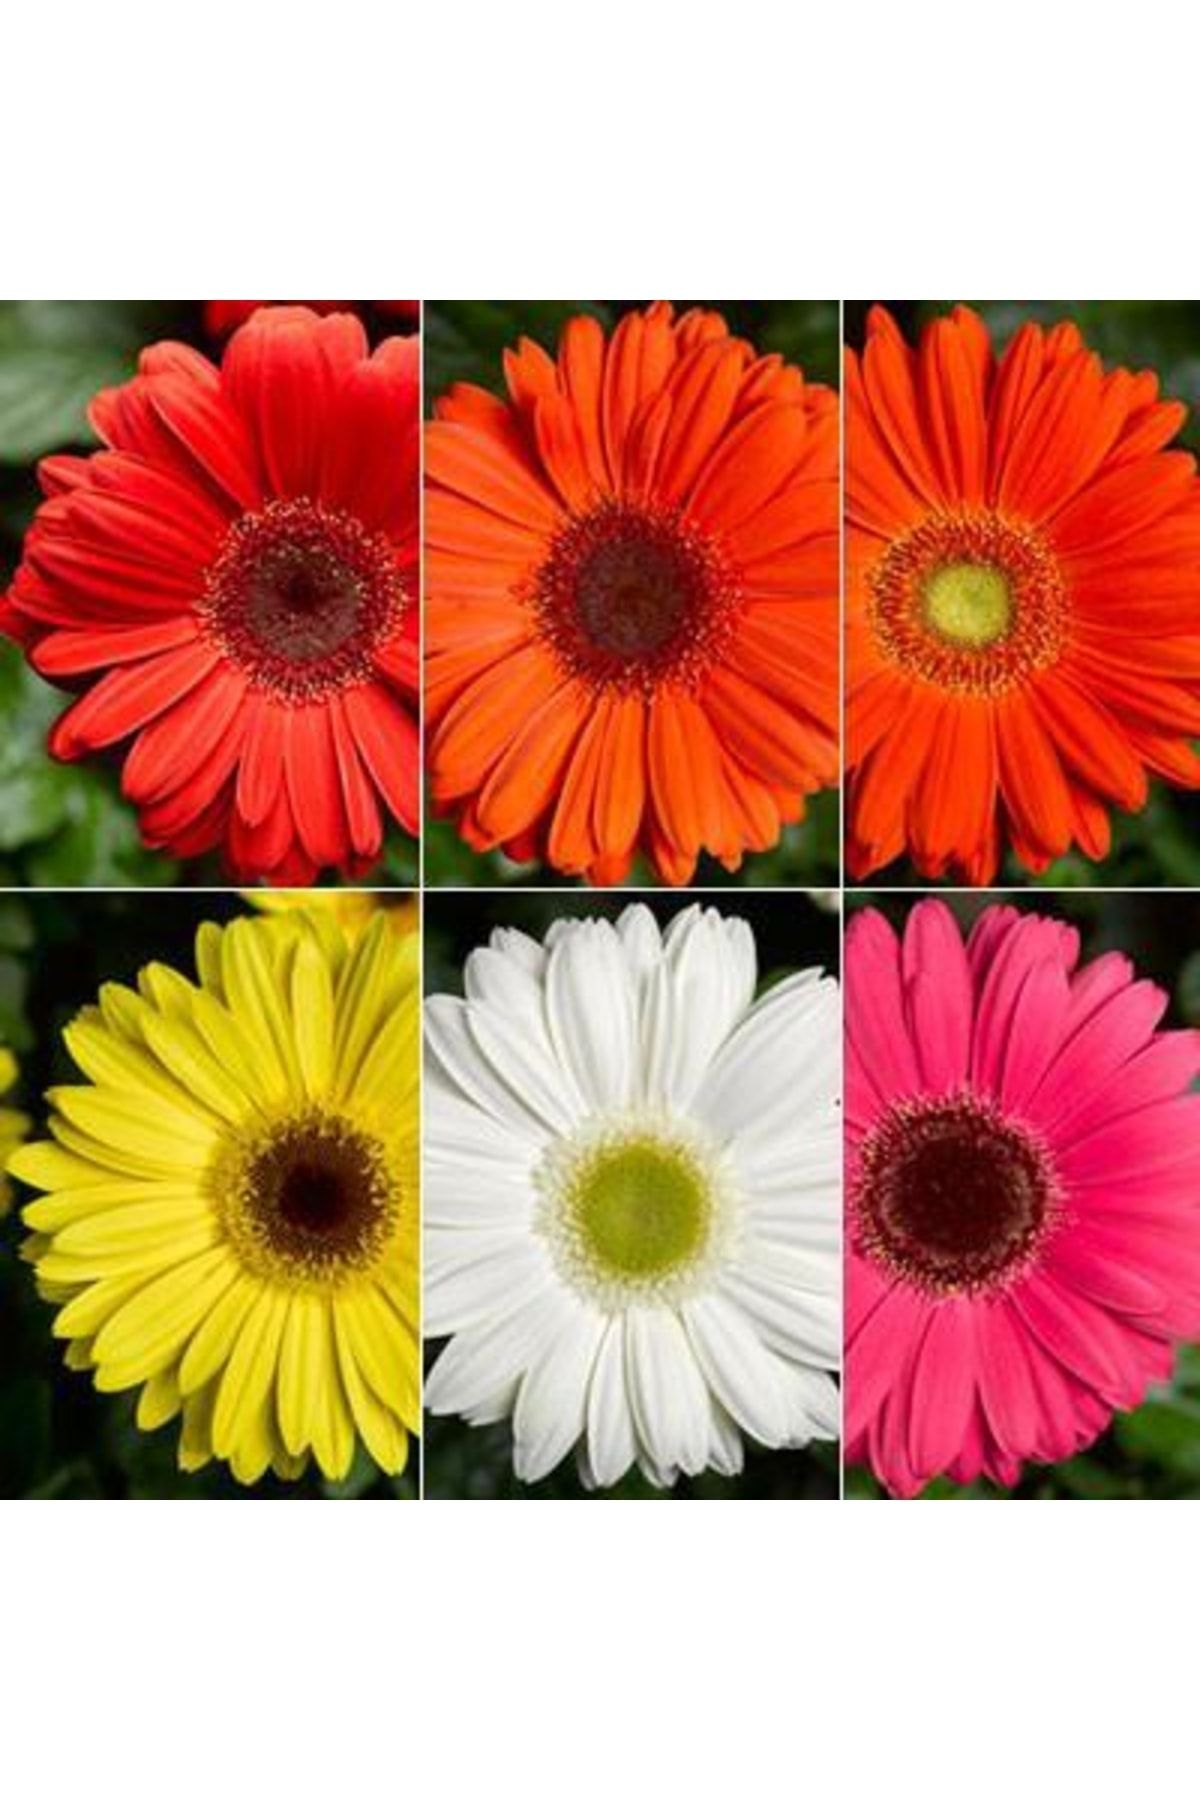 logitel 100 Adet Karışık Renk Gerbera Çiçeği Tohum+10 Adet Hediye Karışık Renk Lale Çiçek Tohum